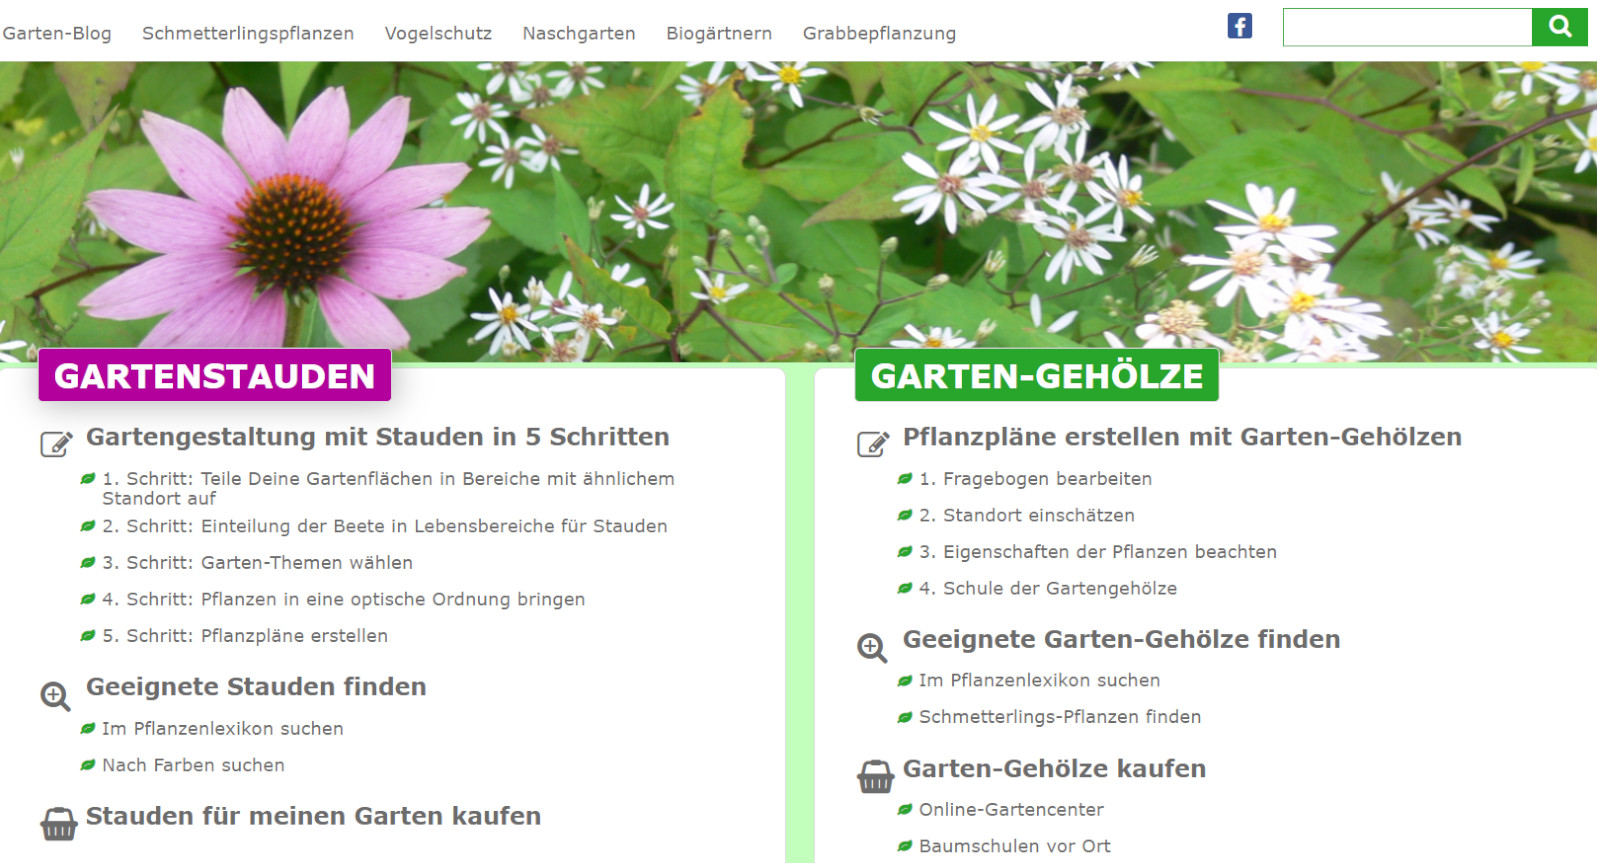 Webseite mit Datenbank über Gartenstauden und Baumschulpflanzen + Affiliate-Links